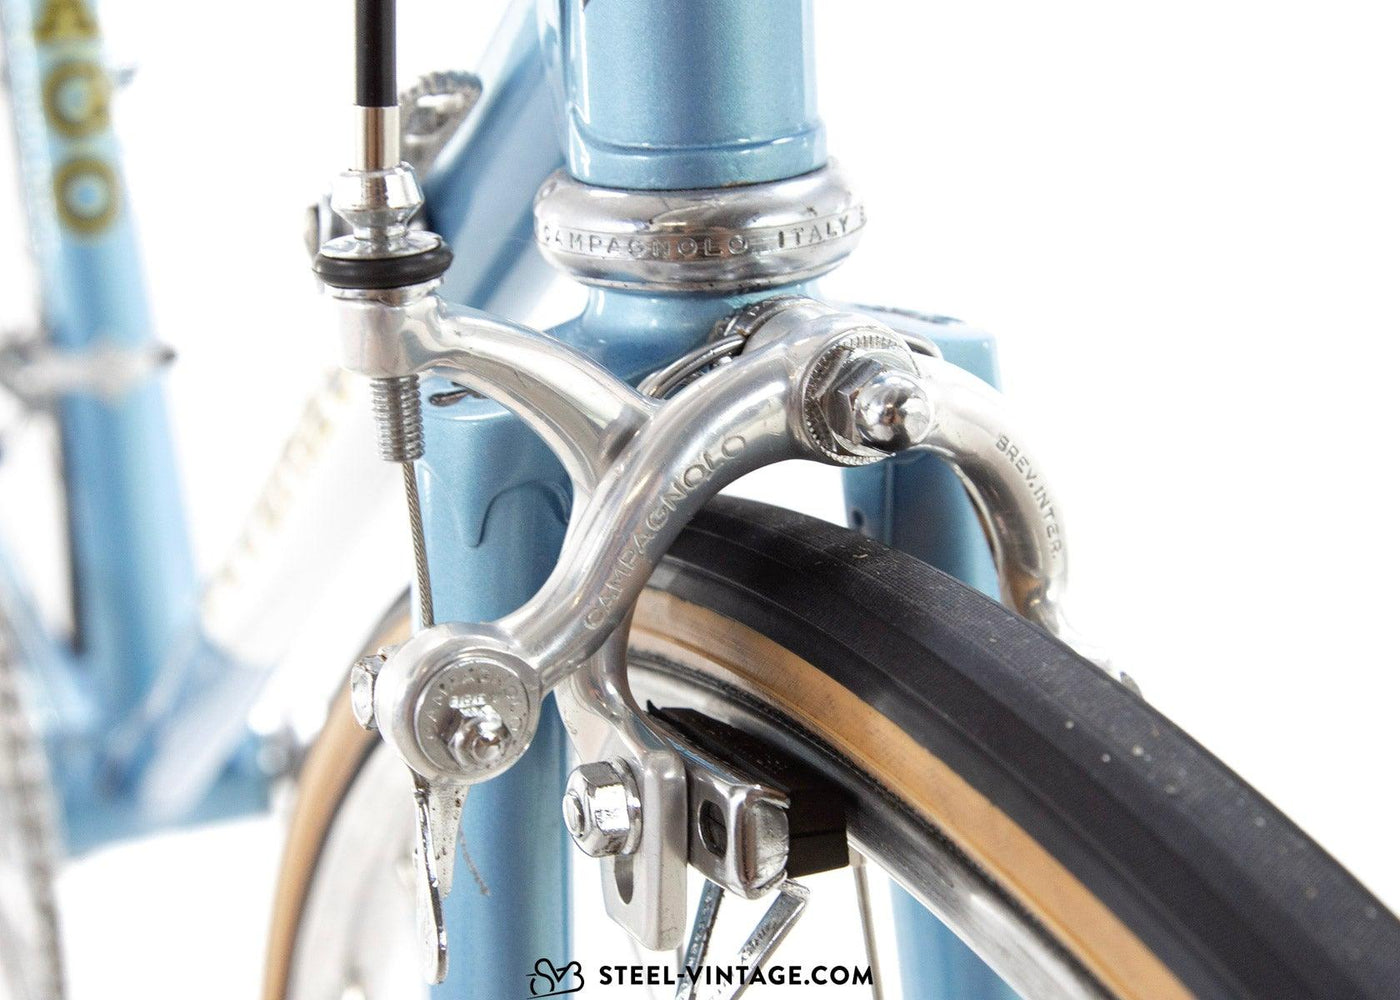 Colnago Super Road Bicycle 1974 - Steel Vintage Bikes